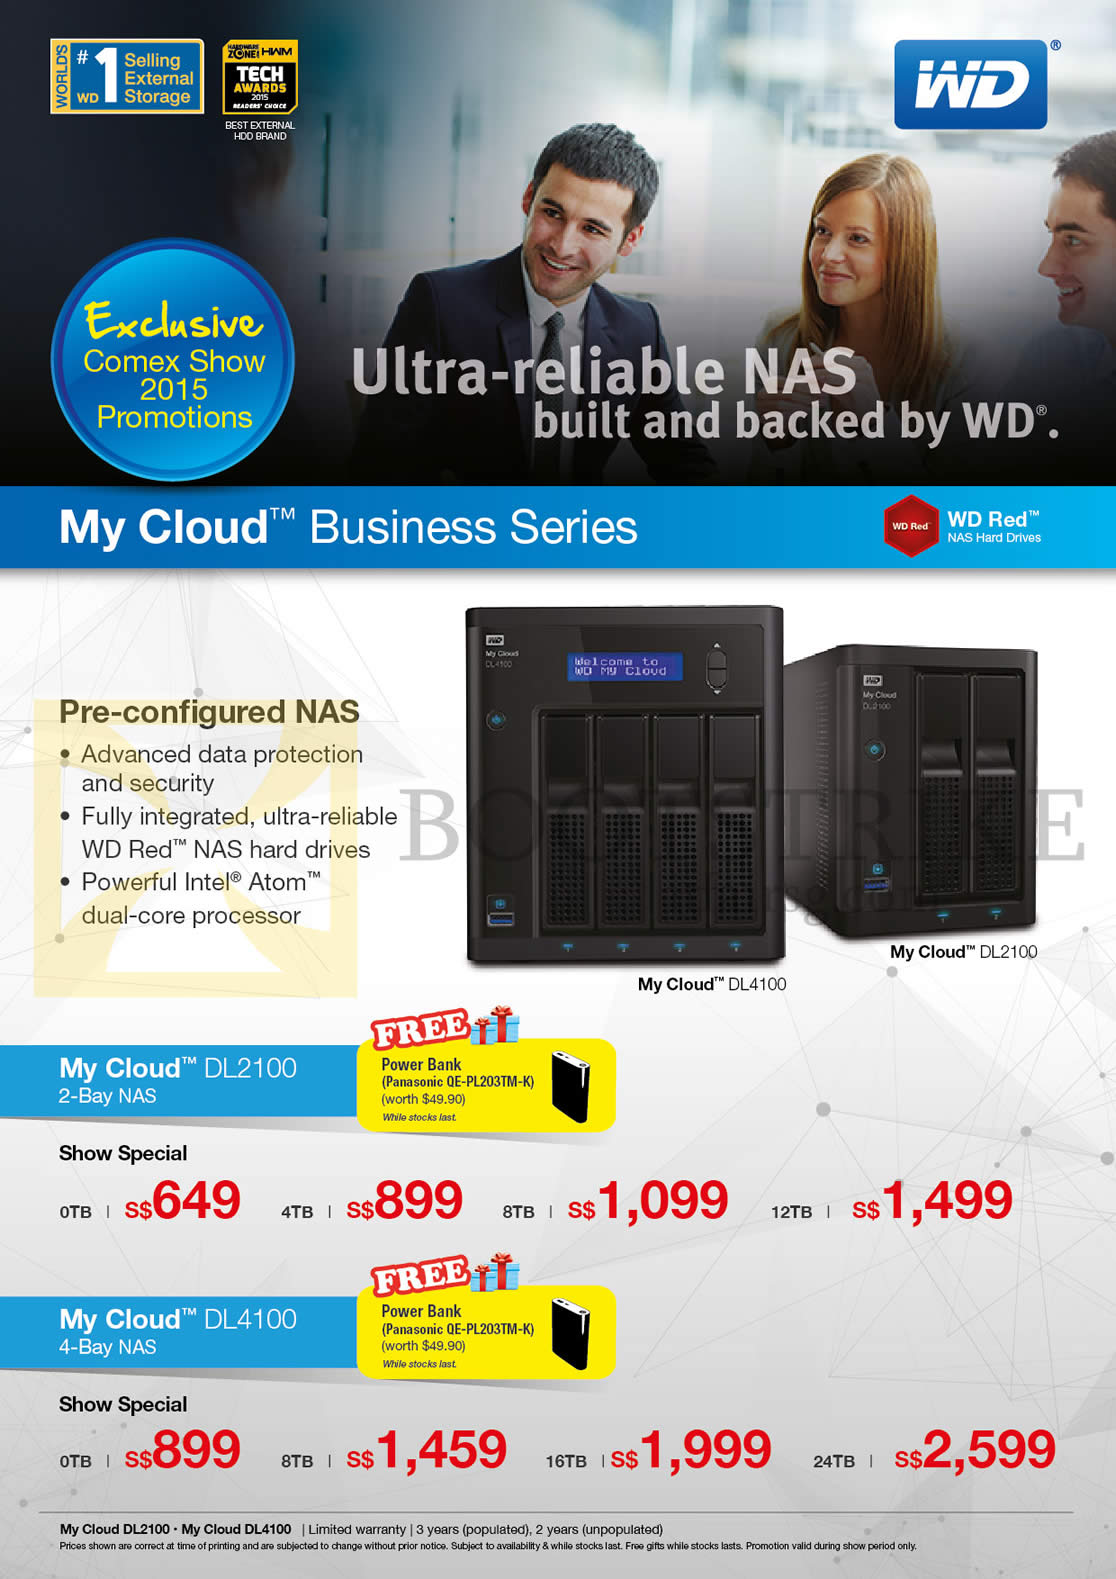 COMEX 2015 price list image brochure of Western Digital External Storage NAS My Cloud DL2100 2Bay NAS, DL4100 4 Bay NAS 0TB, 4TB, 8TB, 12TB, 16TB, 24TB